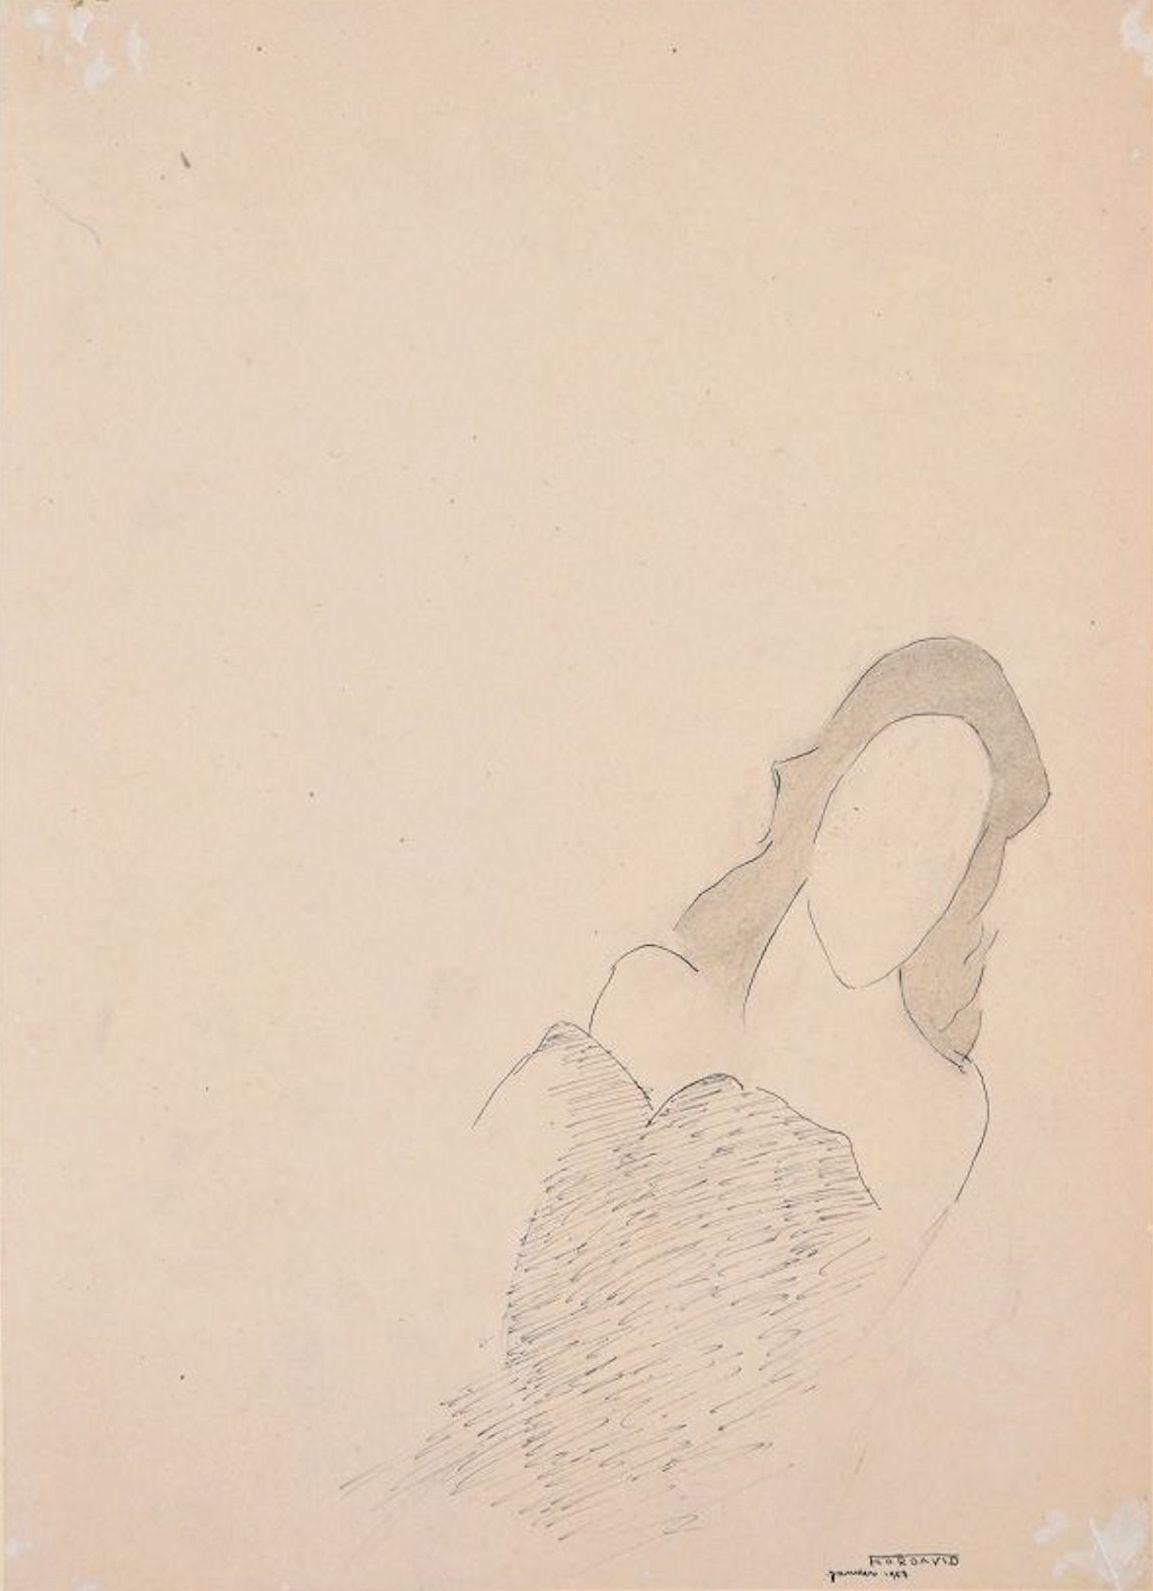 La Reine Morte est un superbe dessin original au crayon et à l'encre sur papier glacé ivoire réalisé par Flor David en 1953.

Représentant la silhouette d'une femme élégante avec un trait rapide et synthétique et une touche sage, ce dessin original